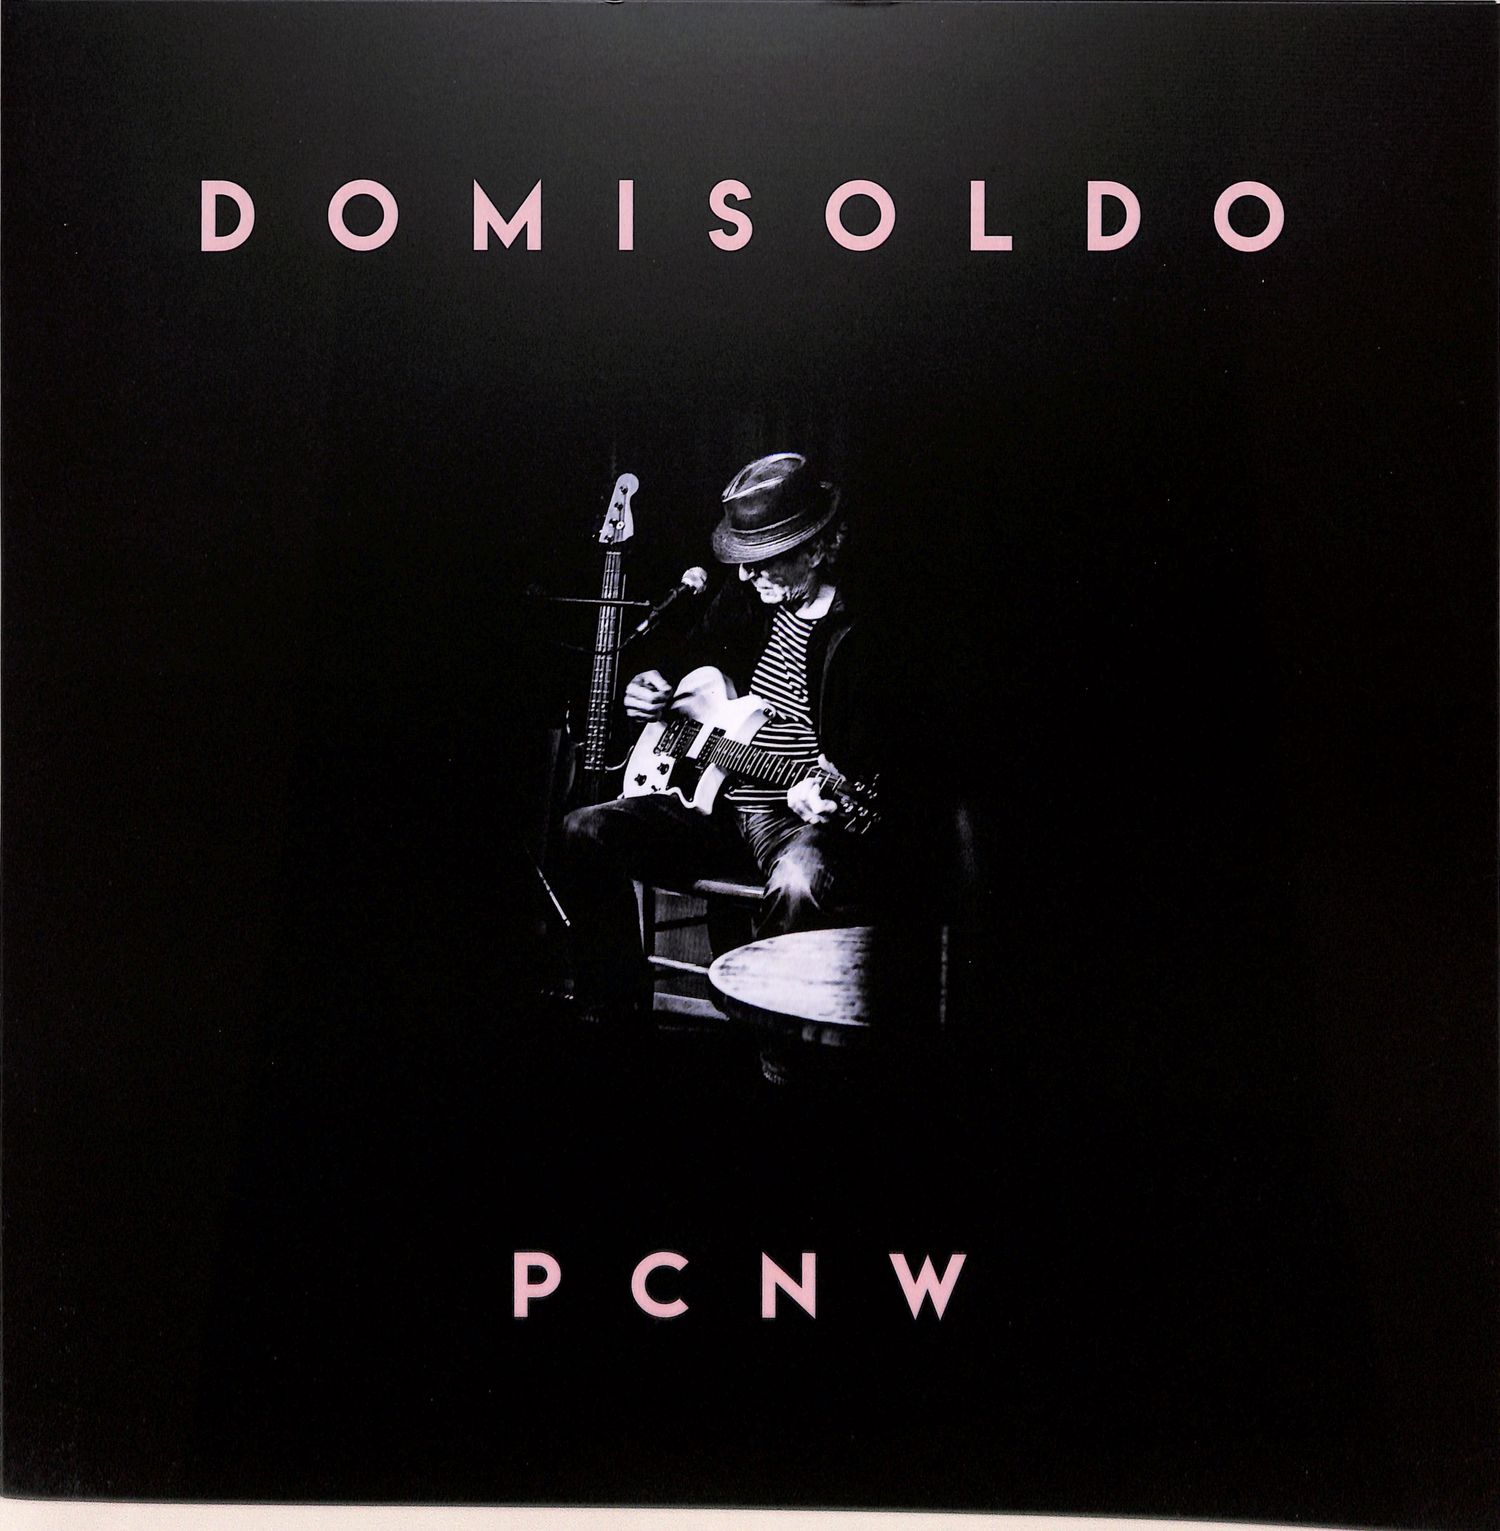 PCNW - DOMISOLDO 